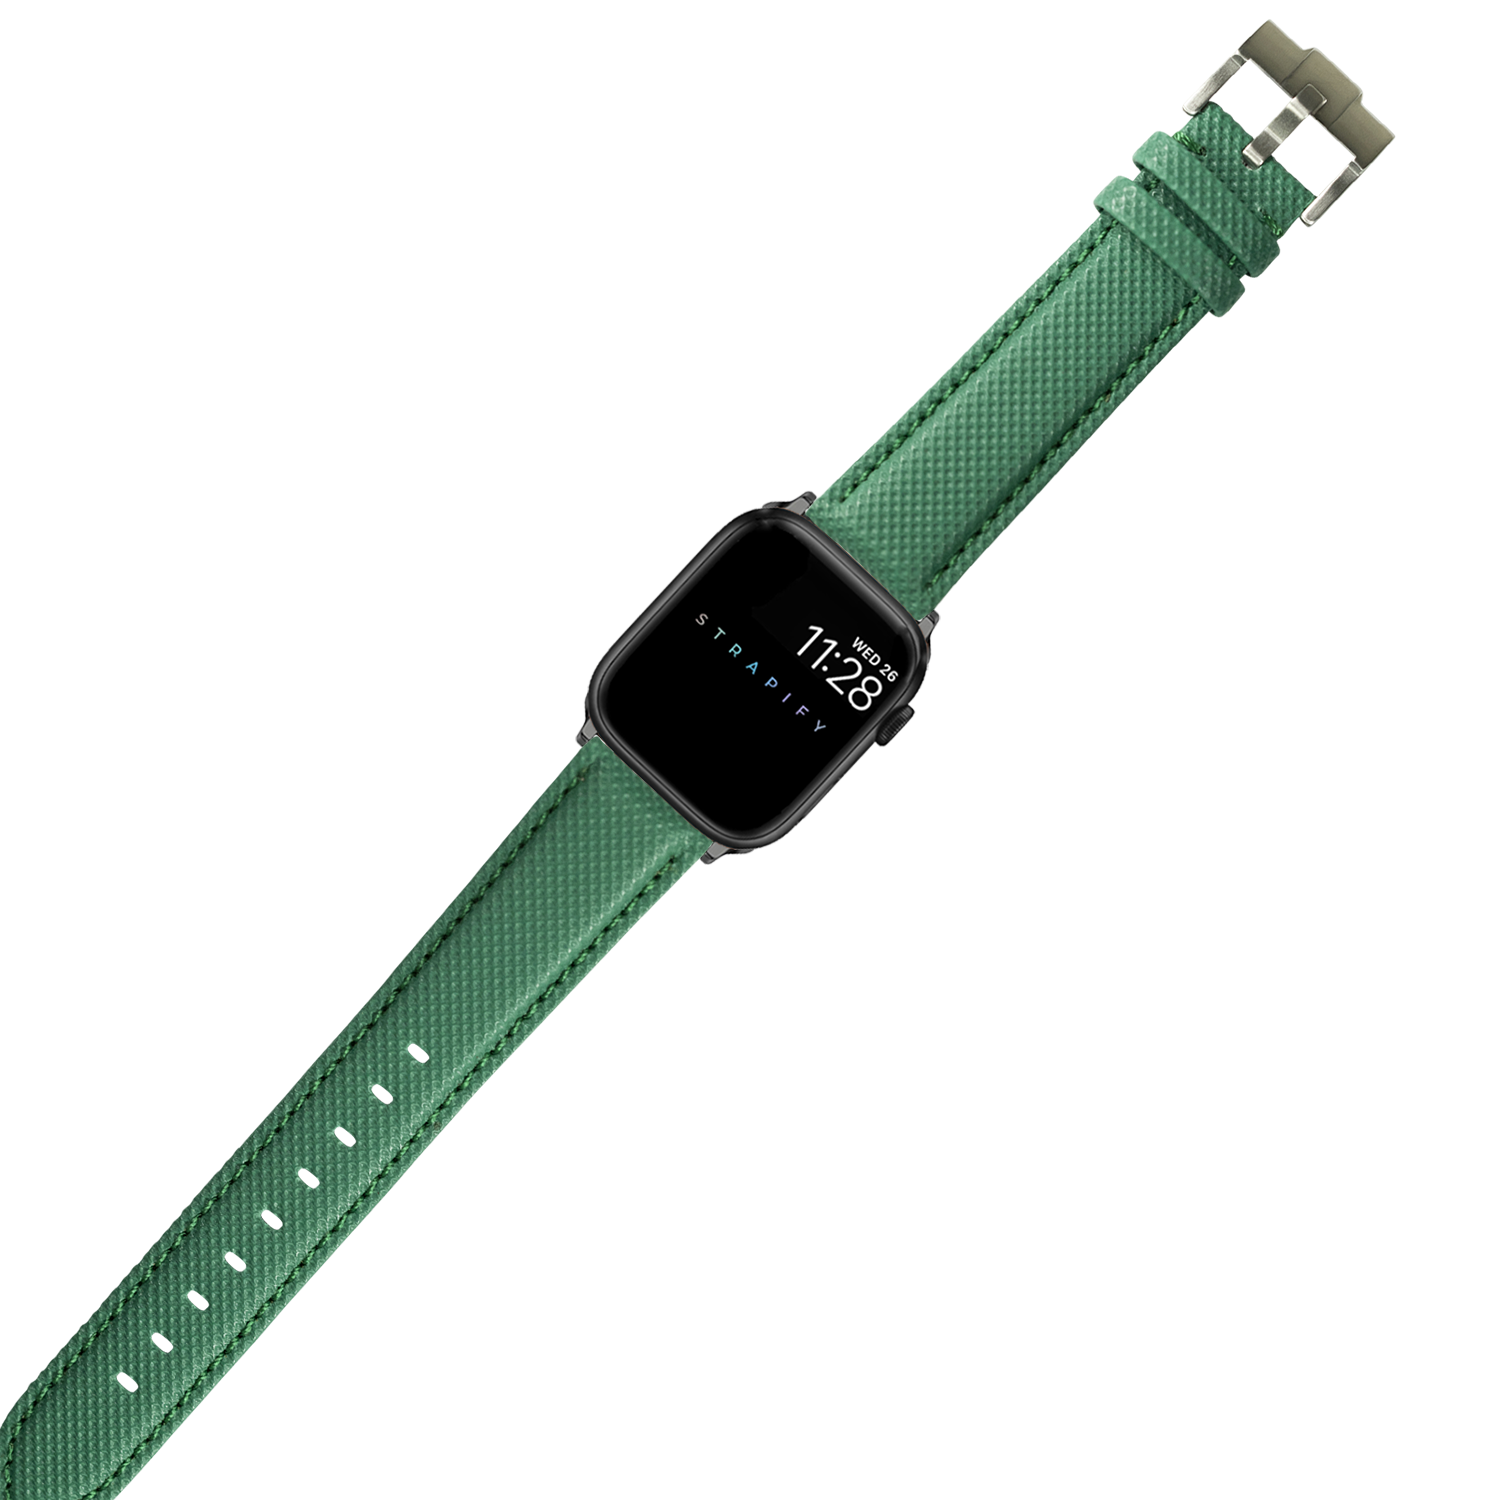 [Apple Watch] Sailcloth - Emerald Green